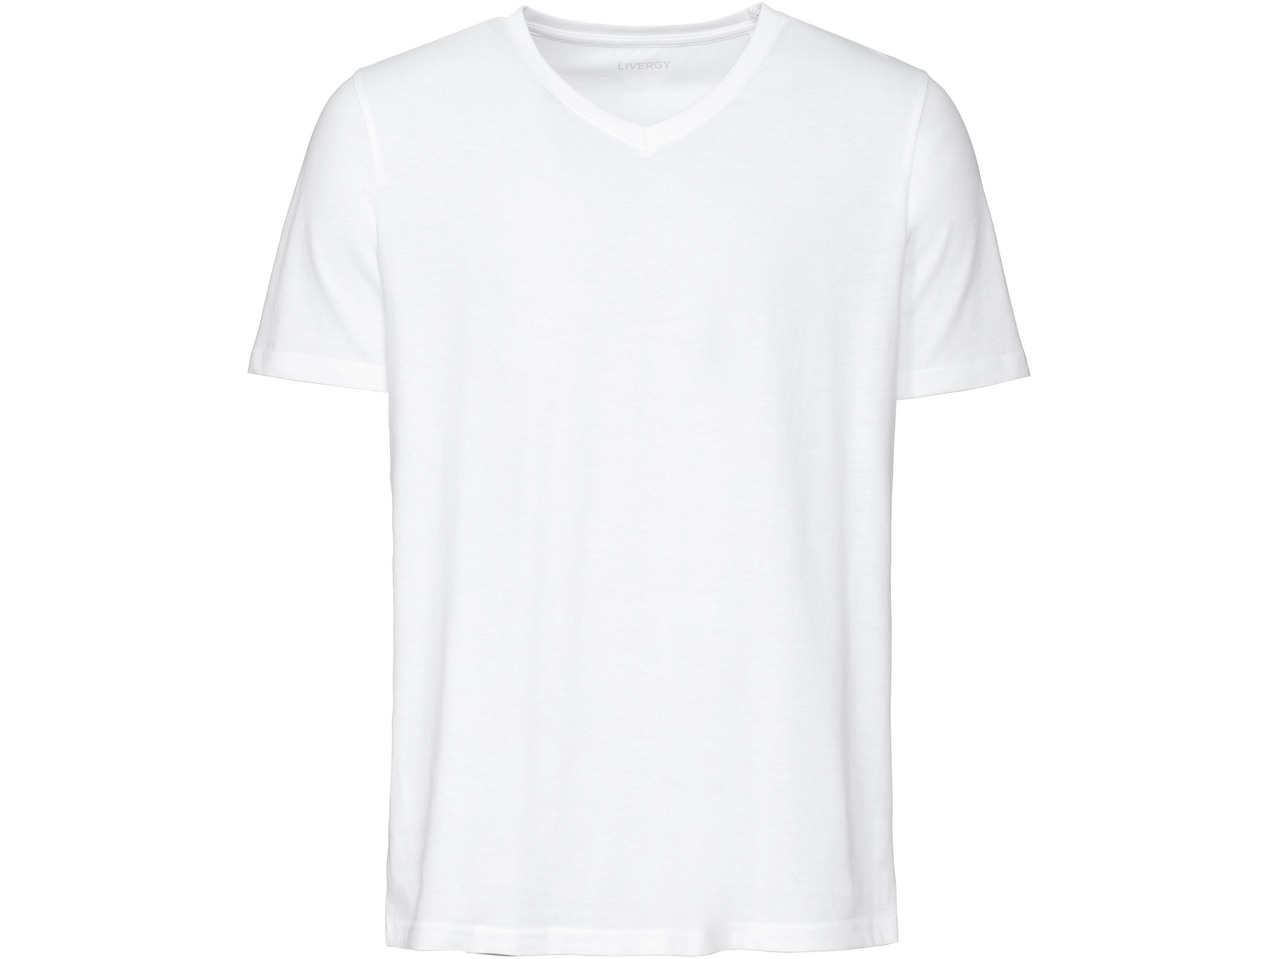 Men's T-shirts, 3 pieces